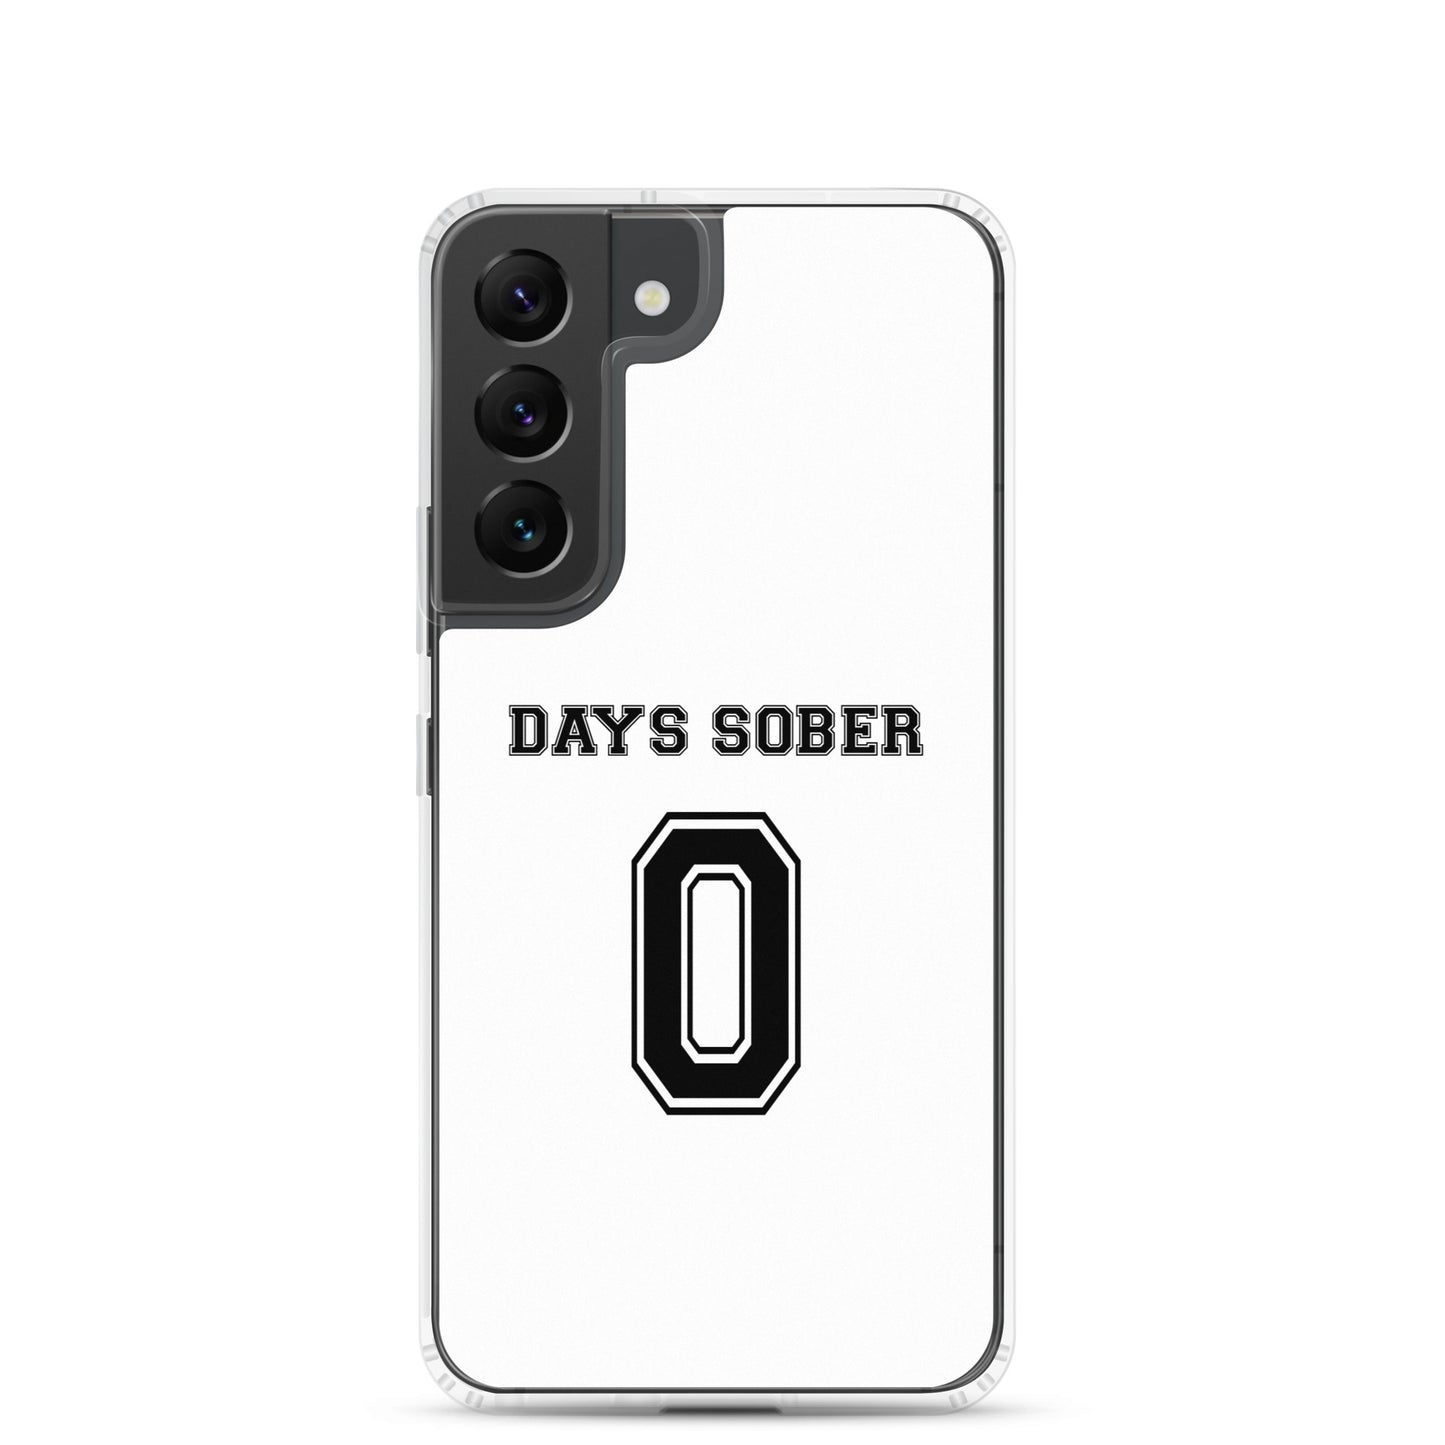 Coque Samsung Days sober 0 Sedurro